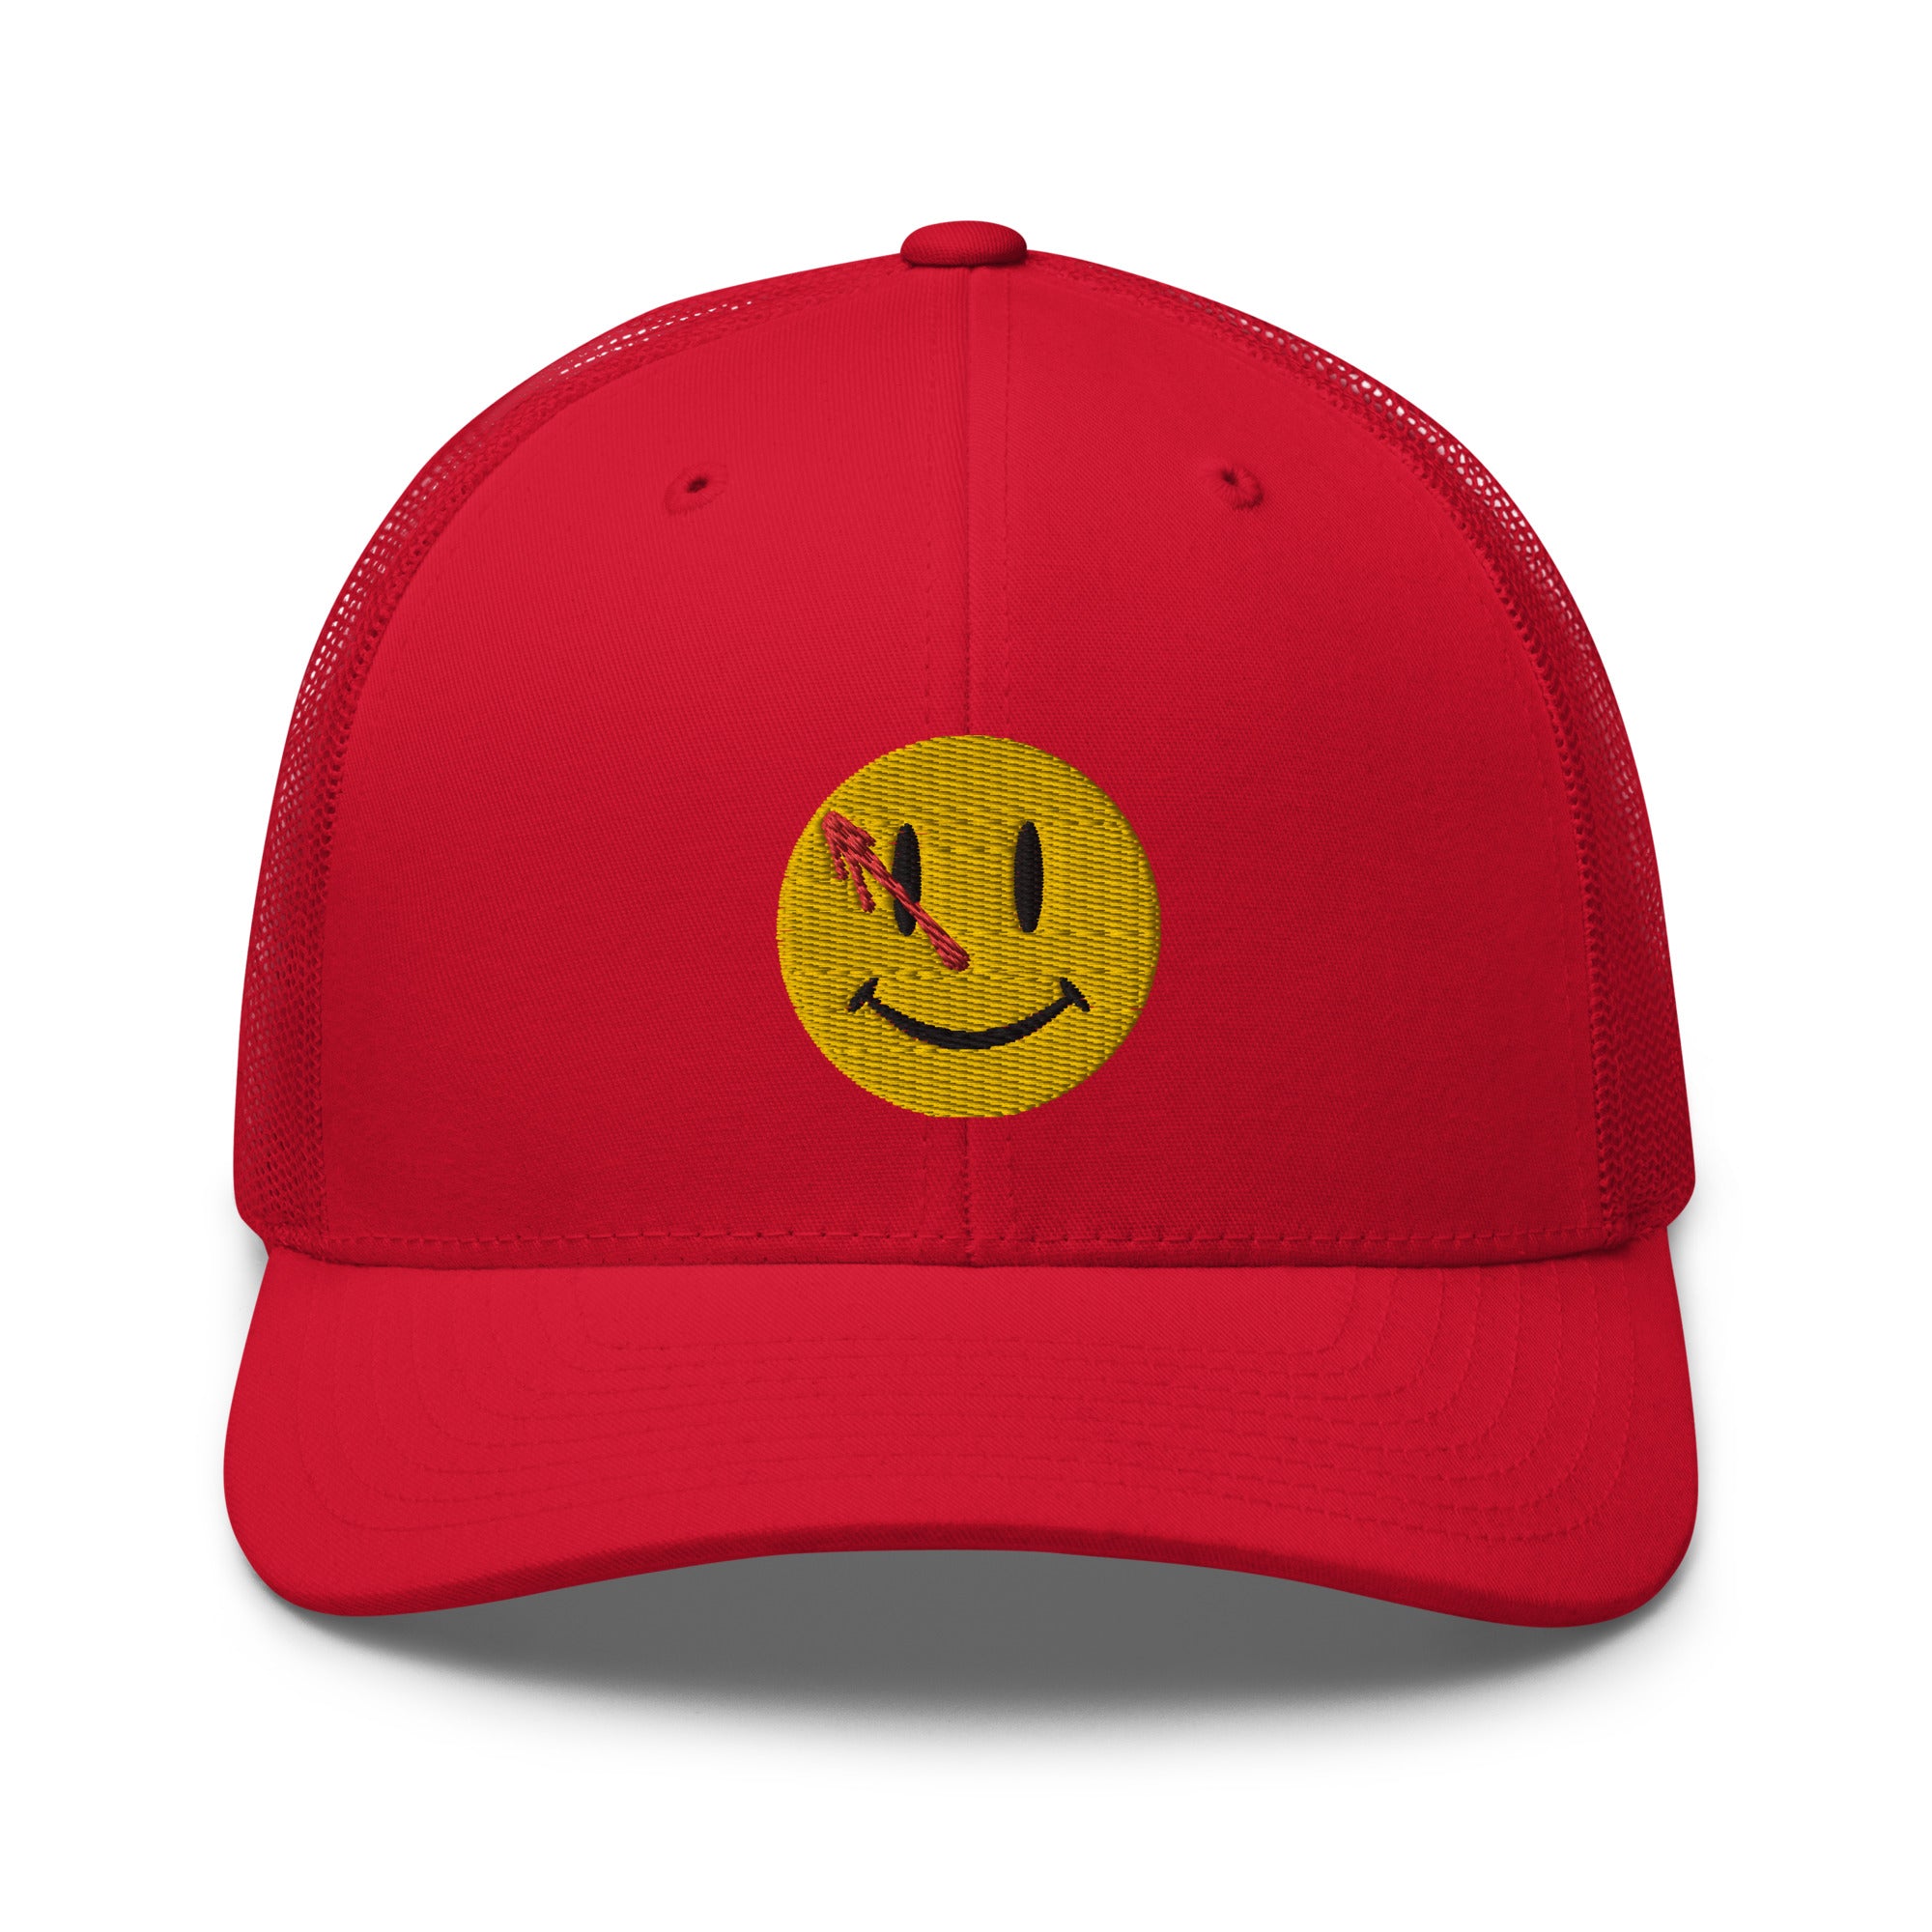 Watchmen Smiley Face Trucker Cap